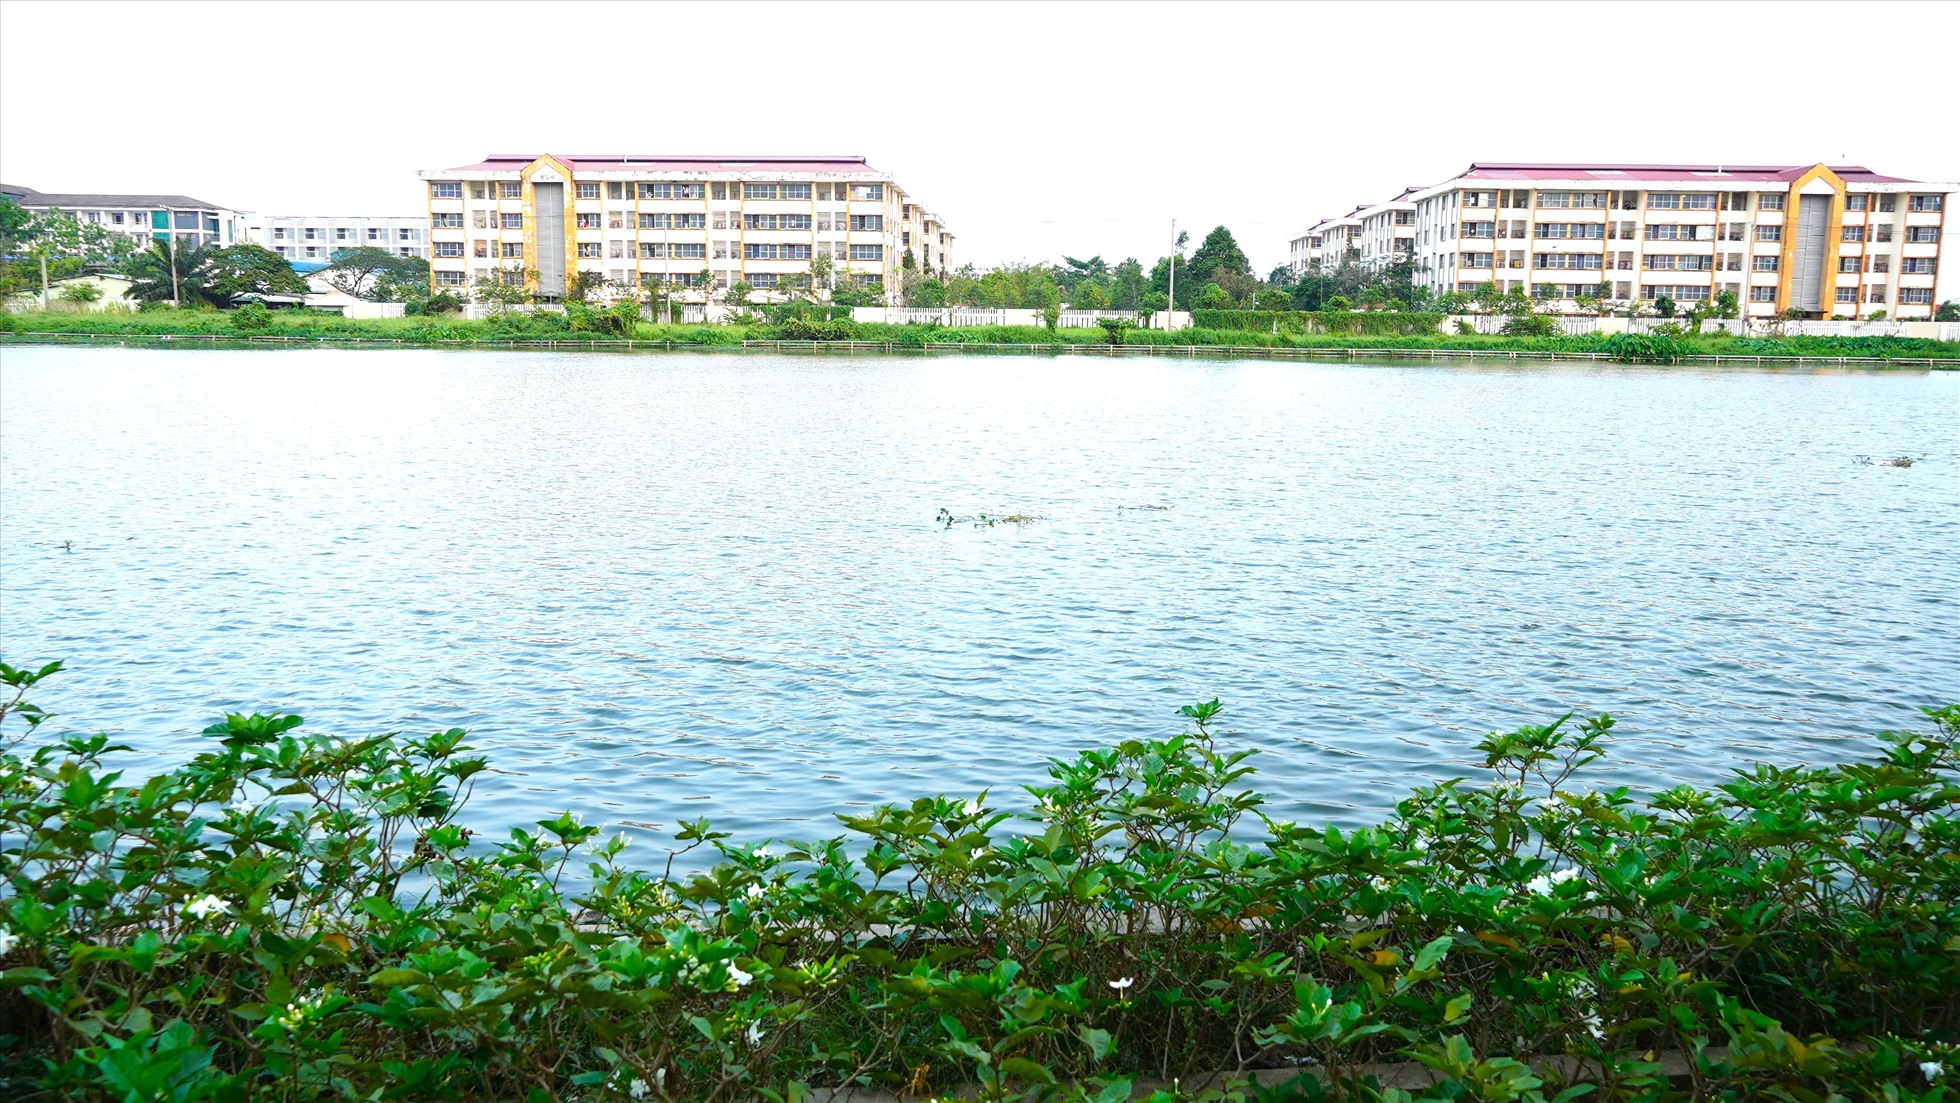 Hồ Búng Xáng (thuộc P. An Khánh, Q. Ninh Kiều) là hồ điều tiết nước lớn nhất của TP Cần Thơ và hiện tuyến đường quanh hồ đã được quy hoạch Phố Ẩm thực, phát triển kinh tế về đêm của thành phố. Dự án hồ Búng Xáng do Ban quản lý Dự án ODA thành phố làm chủ đầu tư, với tổng kinh phí 220 tỉ đồng.